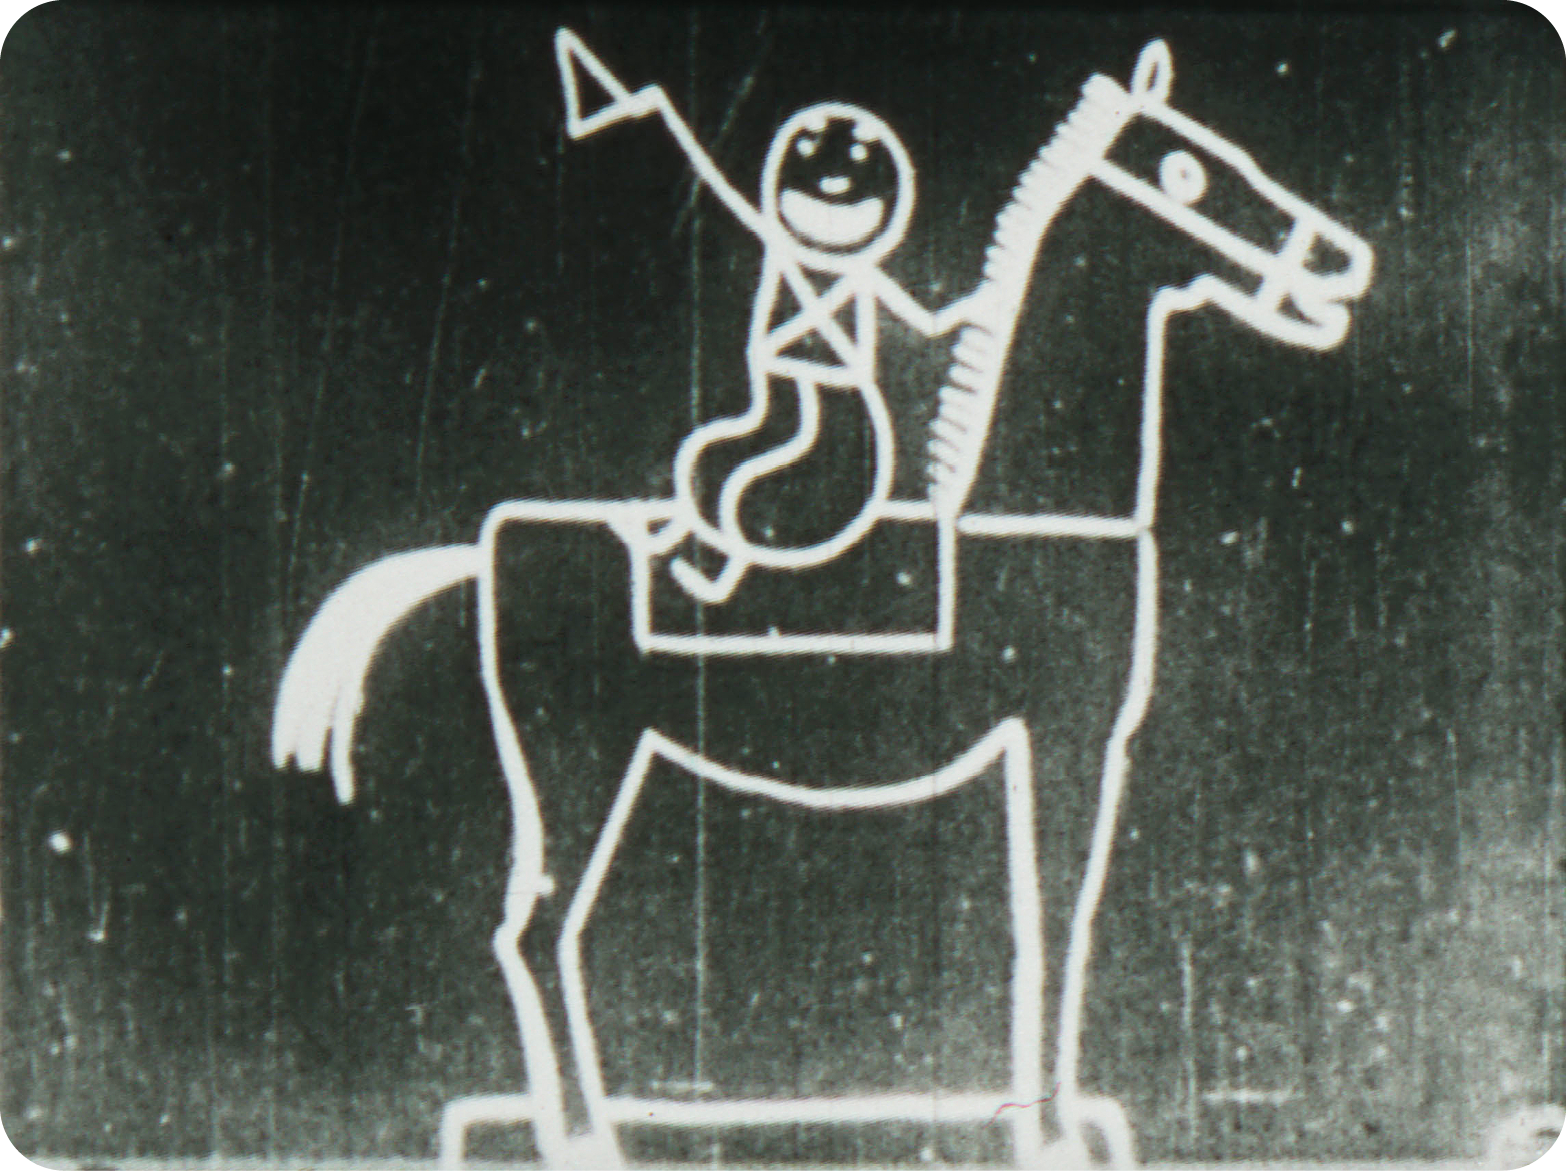 Cena de animação. Em um fundo escuro, está um desenho com linhas grossas em branco de um personagem sentado sobre um cavalo.